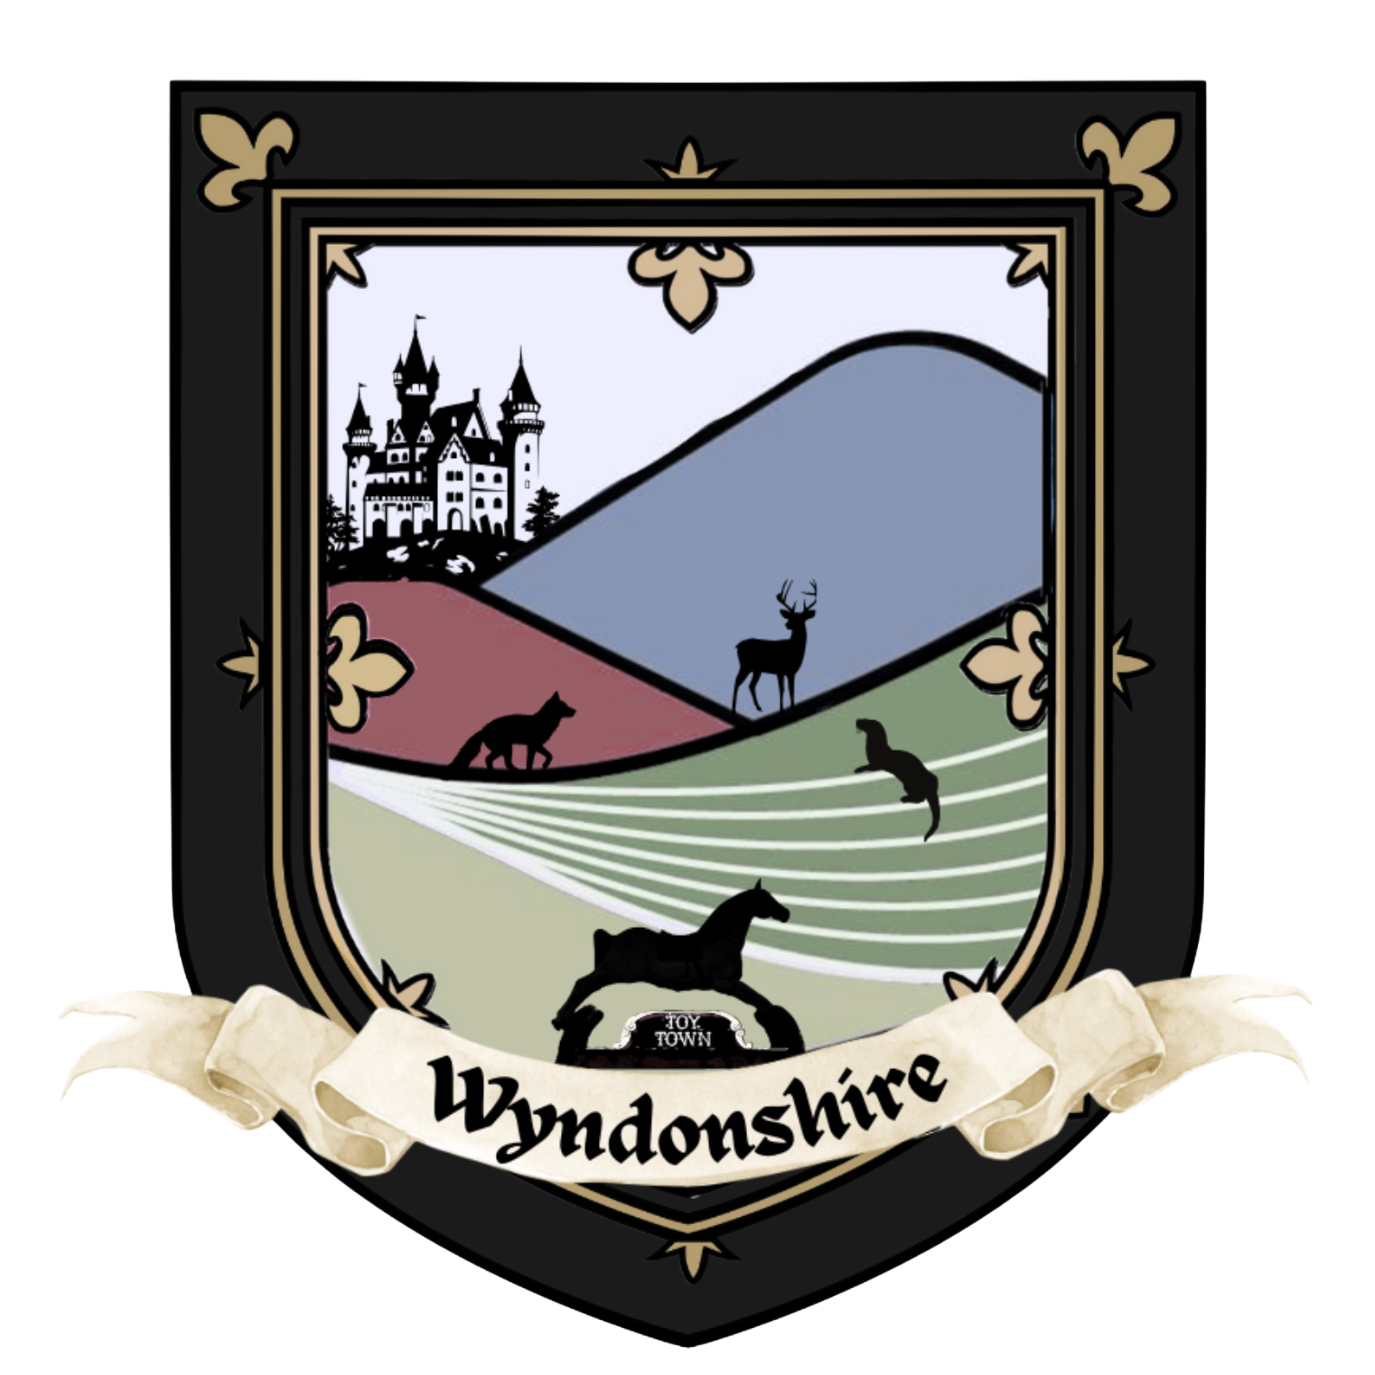 Wyndonshire